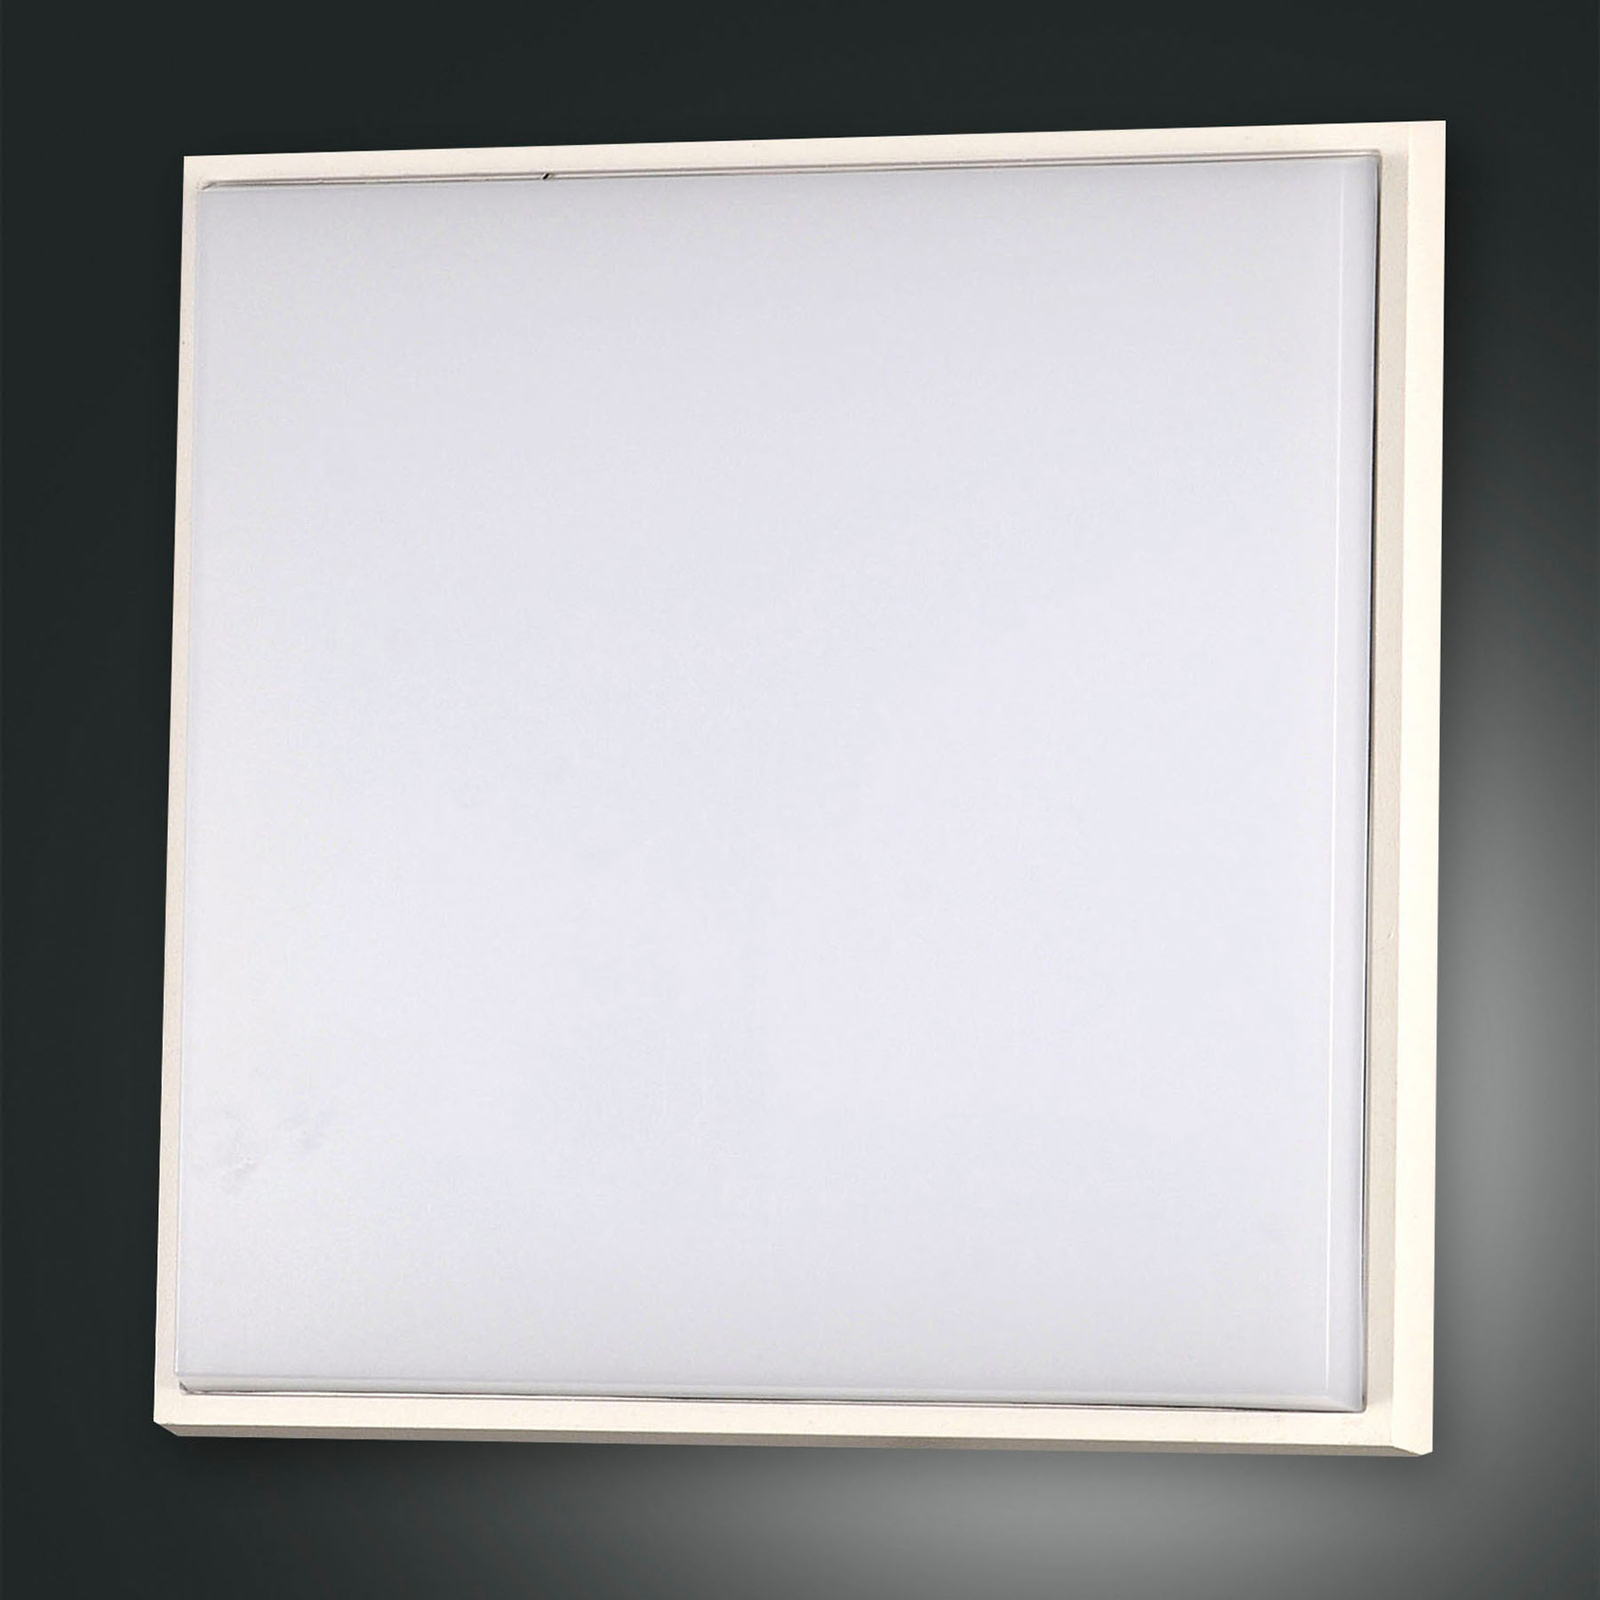 Desdy plafonnier d'extérieur LED, 30x30 cm, blanc